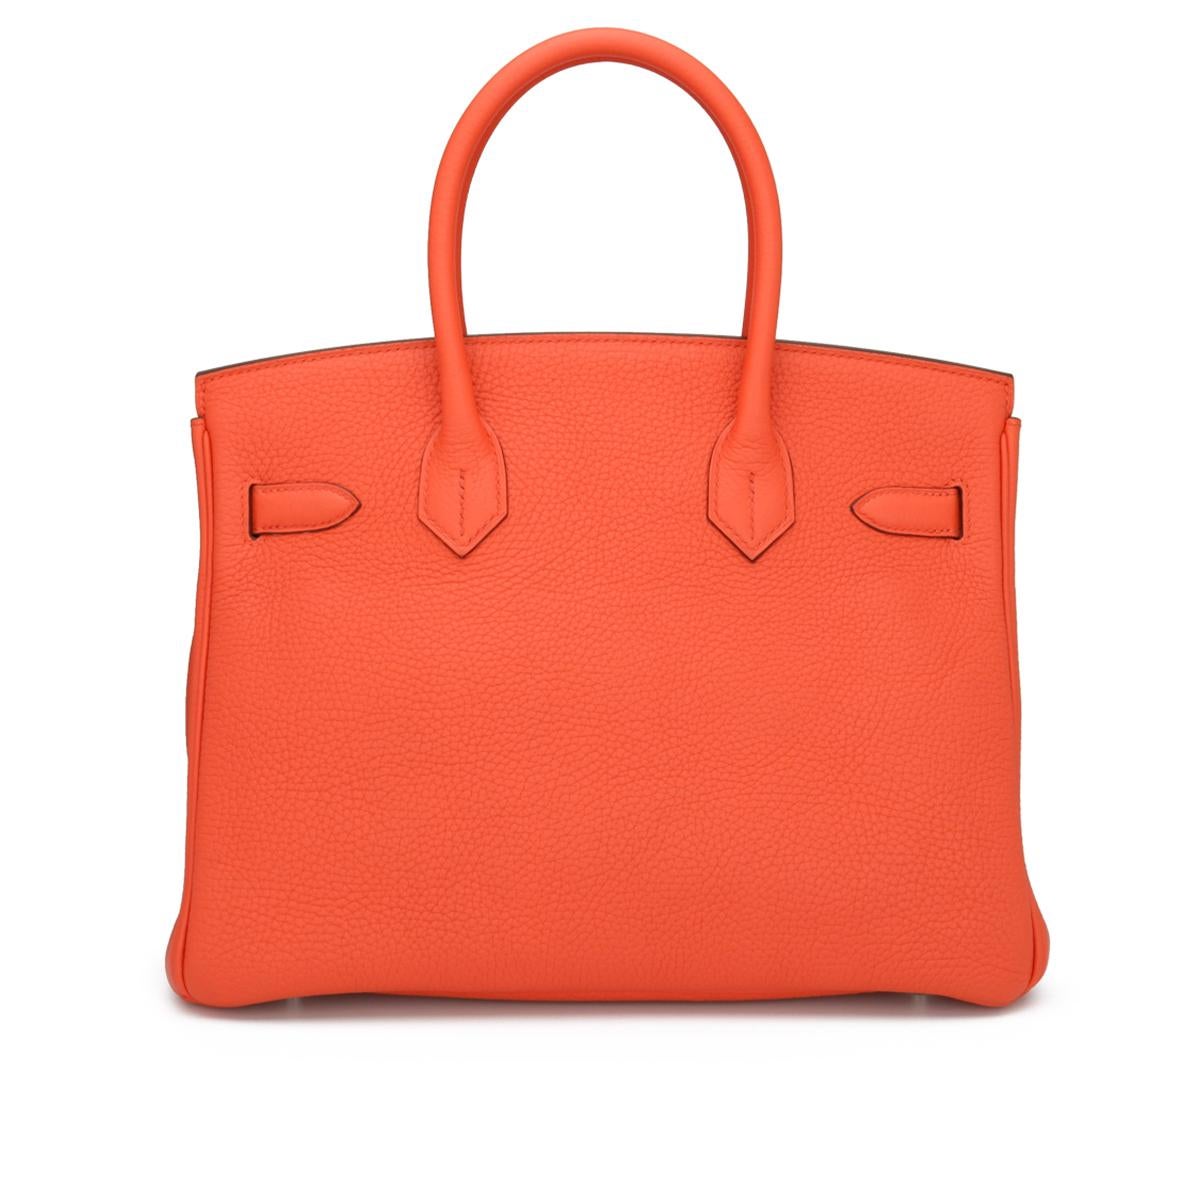 Hermès Birkin Bag 30cm Poppy Orange Togo Leather Palladium Hardware Stamp T 2015 In Good Condition For Sale In Huddersfield, GB